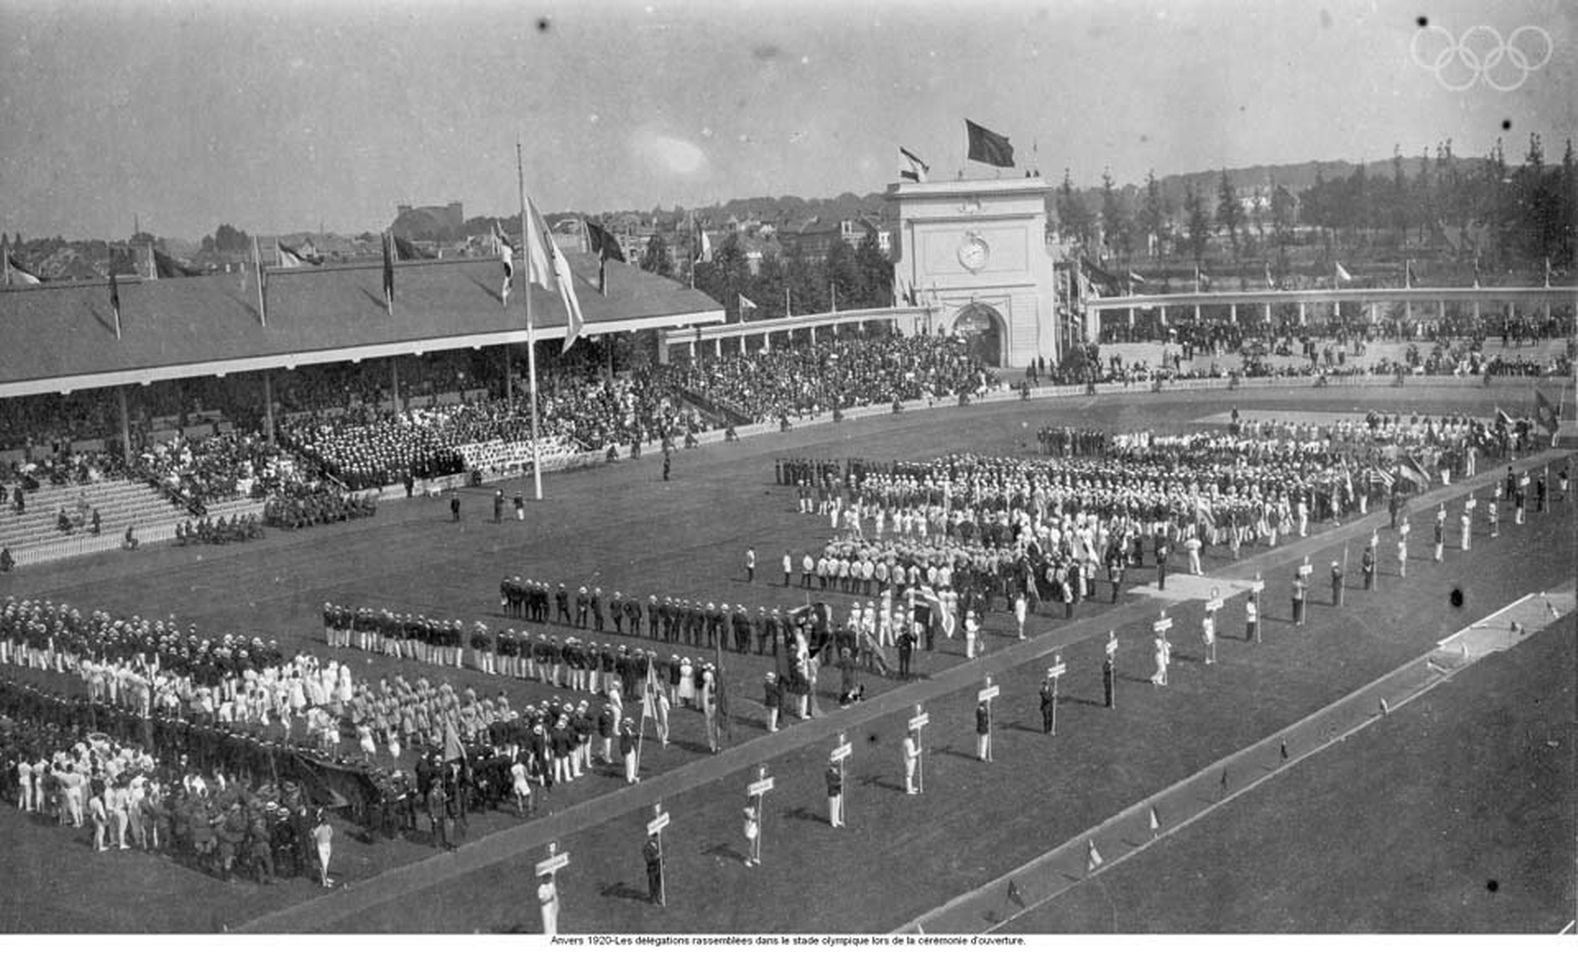 Bendera Olimpiade berlambang 5 cincin pertama kali dikibarkan pada Olimpiade Antwerp di Belgia, 1920. Foto dari olympic.org 